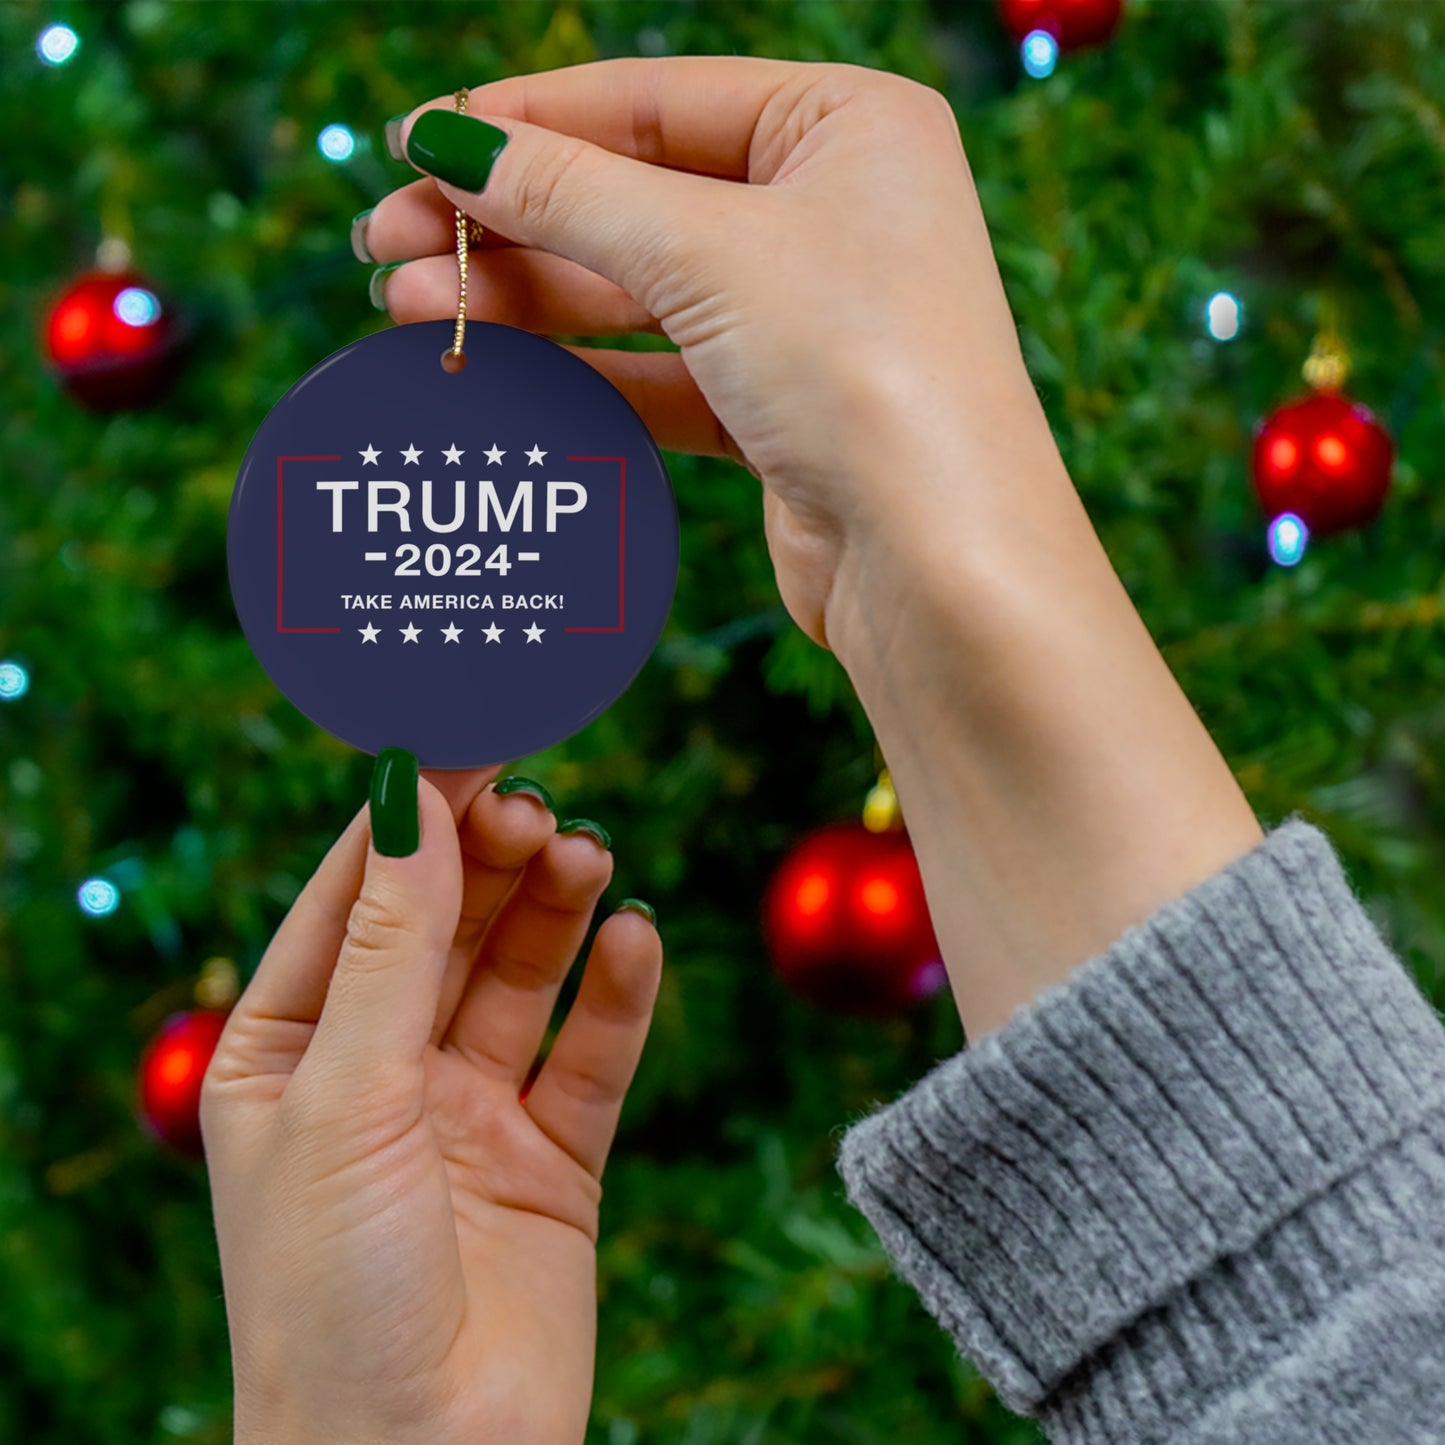 Trump 2024 Ornament